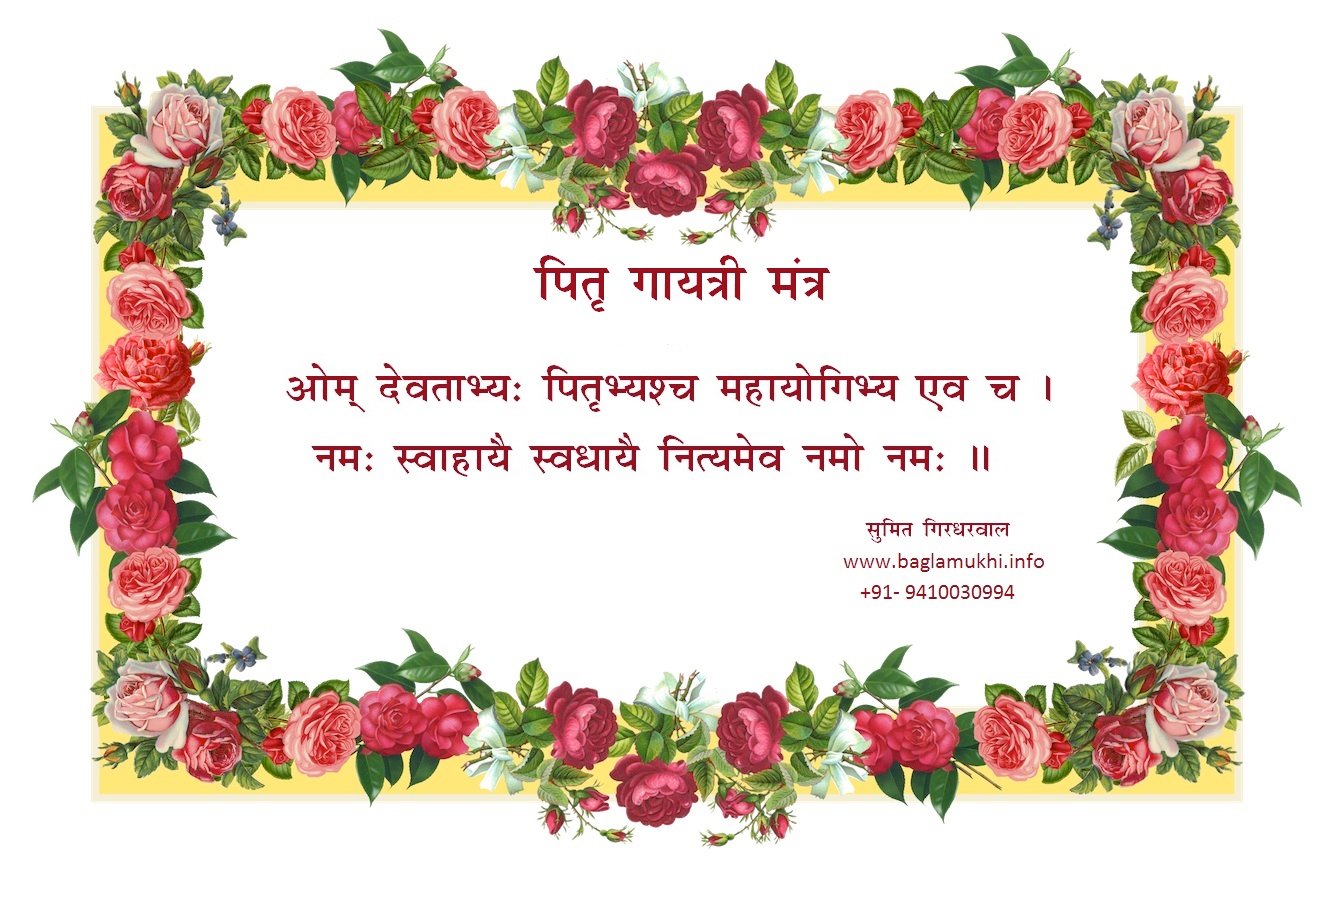 pitra-gayatri-mantra-pitru-dosha-nivaran-mantra